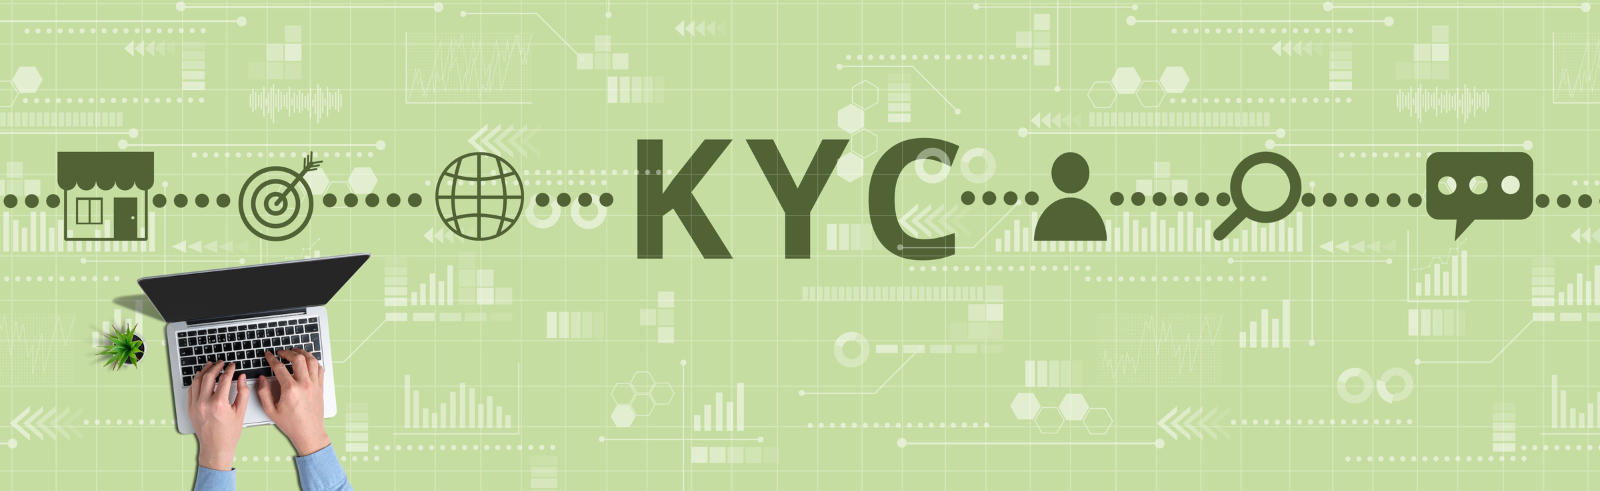 KYC steht für Know Your Customer